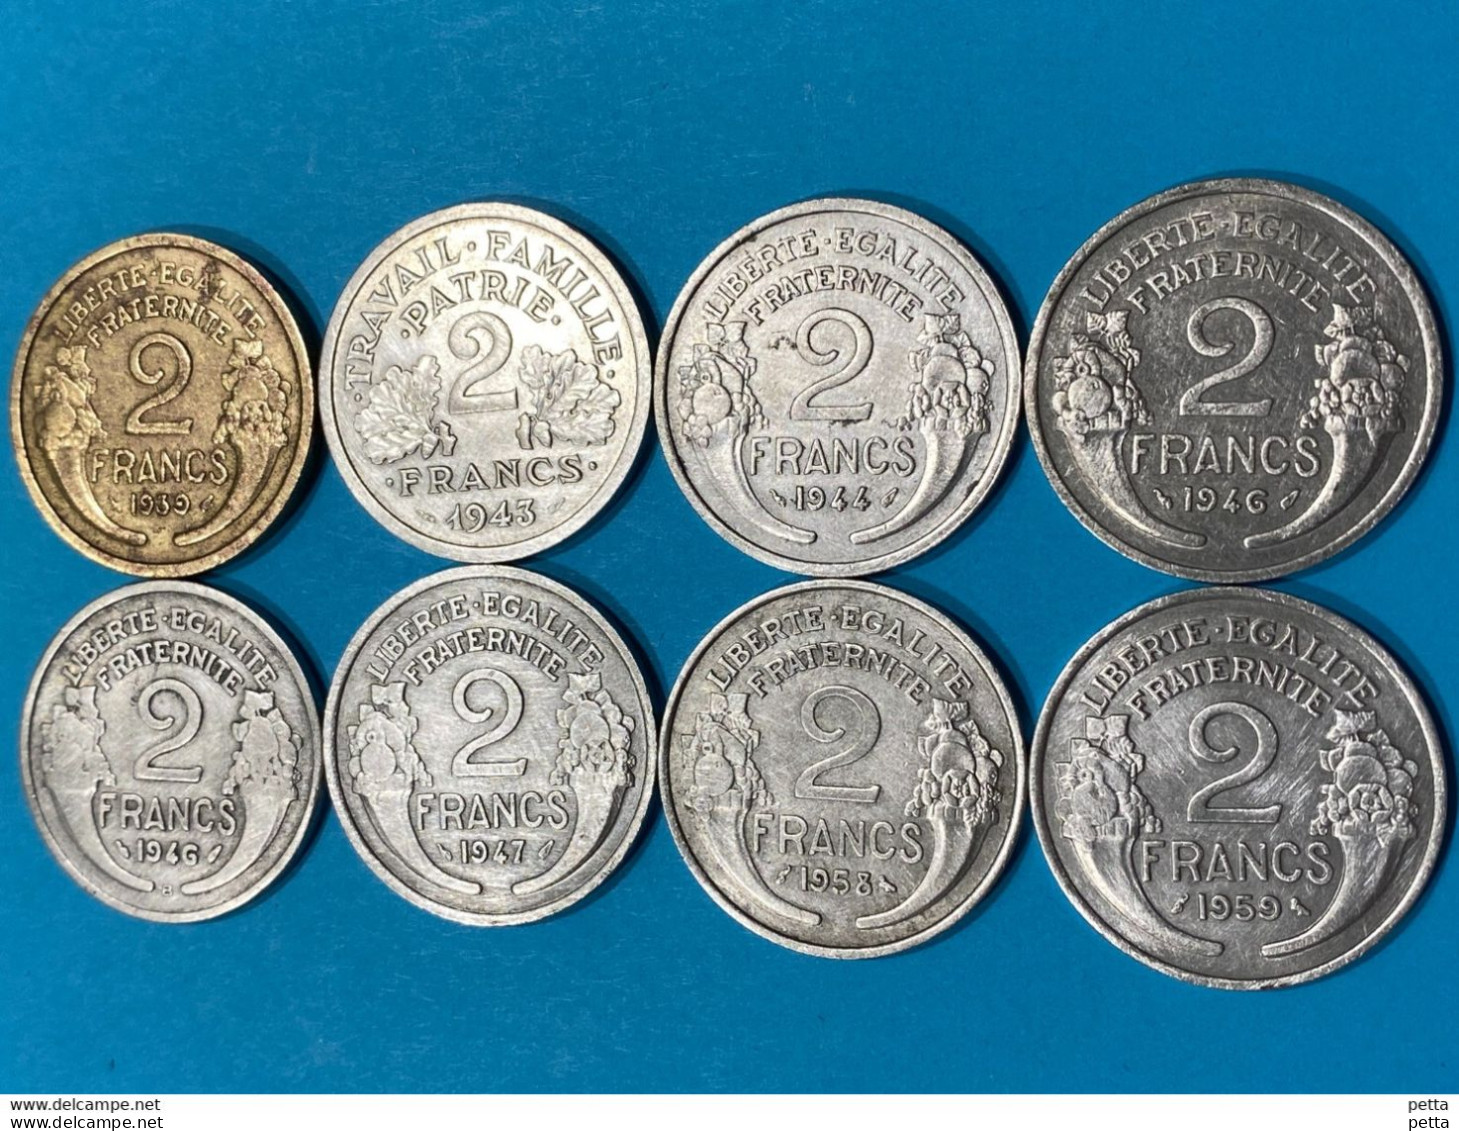 8 Pièces De 2 Francs / France / 1939-1943-1944-1946-1946-1947-1958-1959 /lot N °54 - 2 Francs